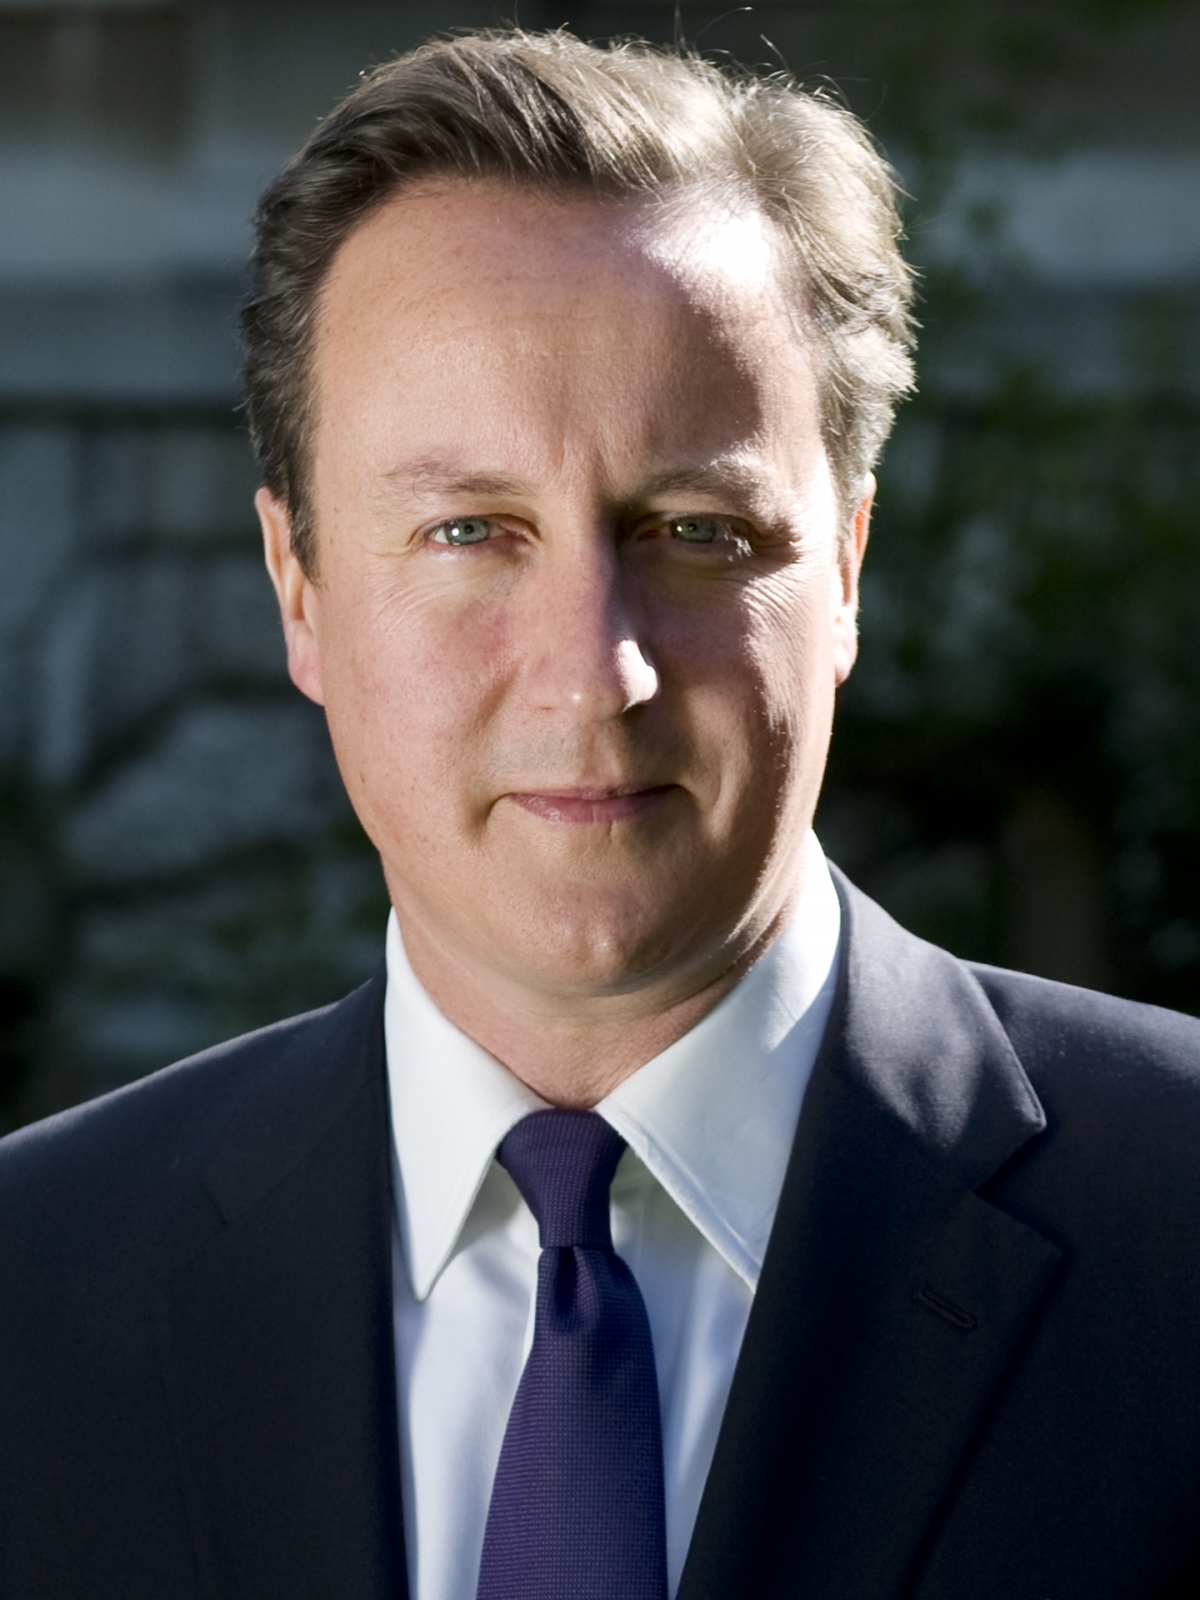 David Cameron returns to UK govt as Foreign Secretary - IBTimes India